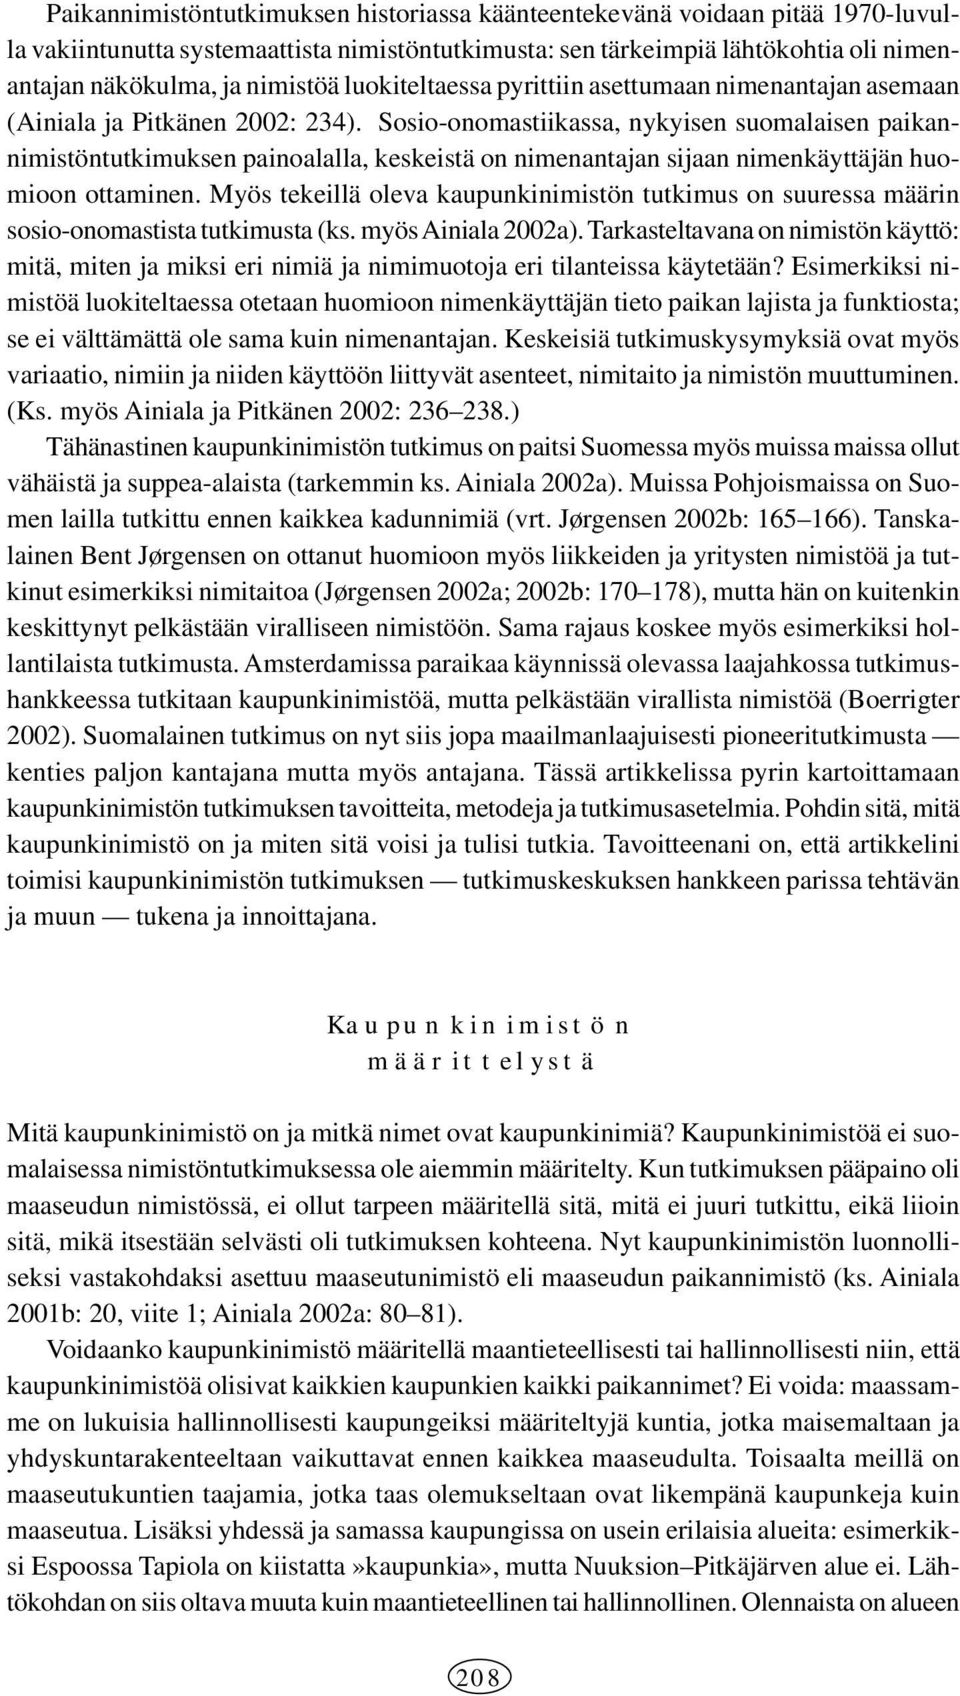 Sosio-onomastiikassa, nykyisen suomalaisen paikannimistöntutkimuksen painoalalla, keskeistä on nimenantajan sijaan nimenkäyttäjän huomioon ottaminen.